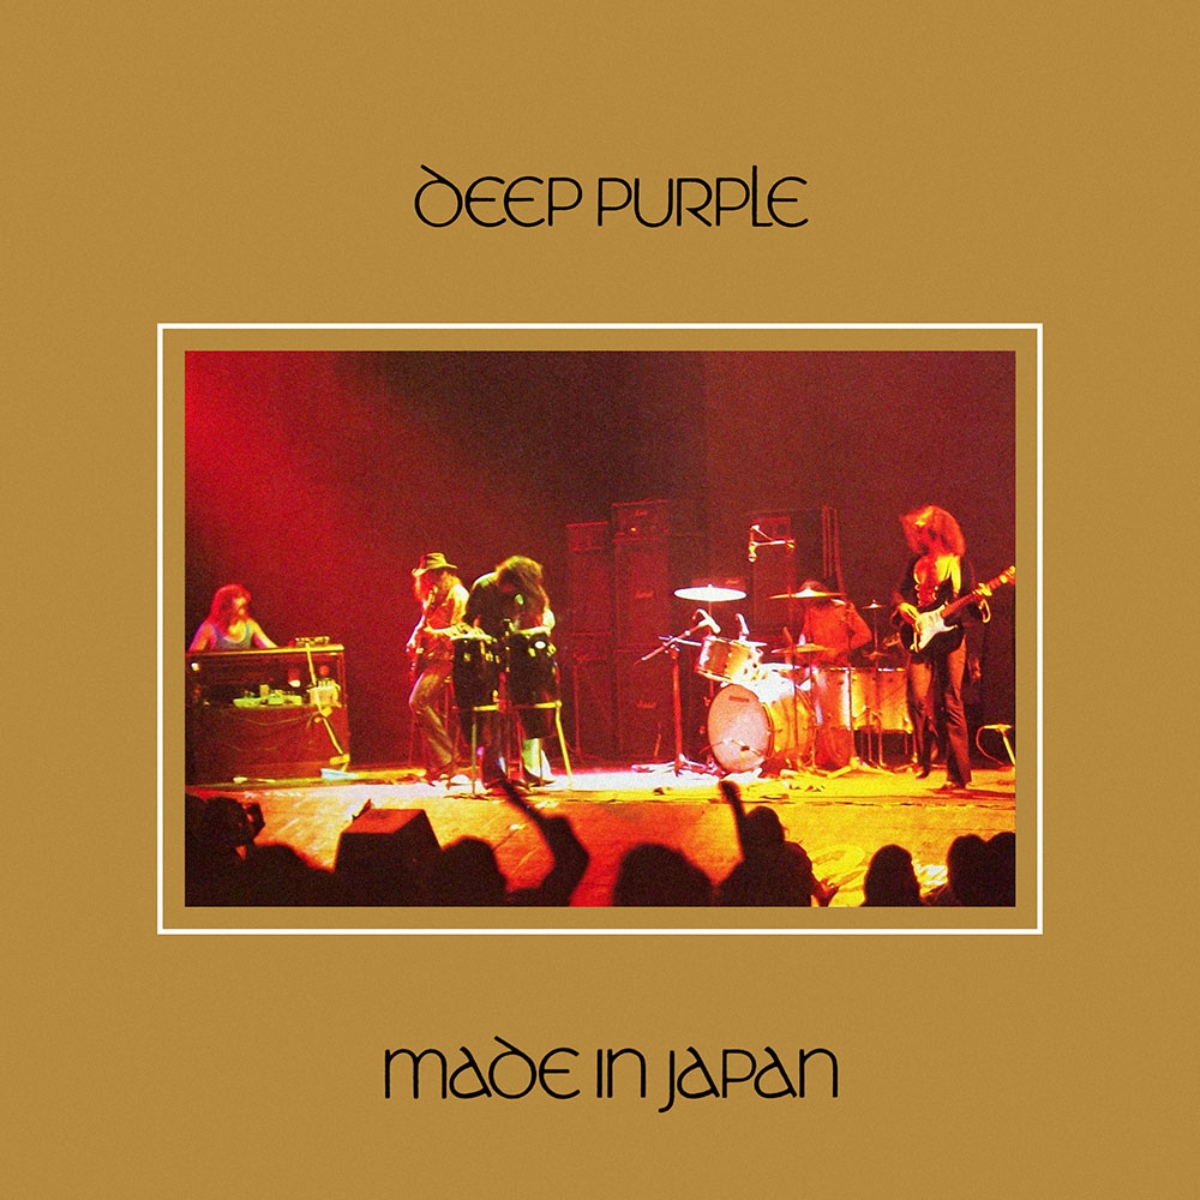 Deep Purple - "Made in Japan" (portada del álbum)